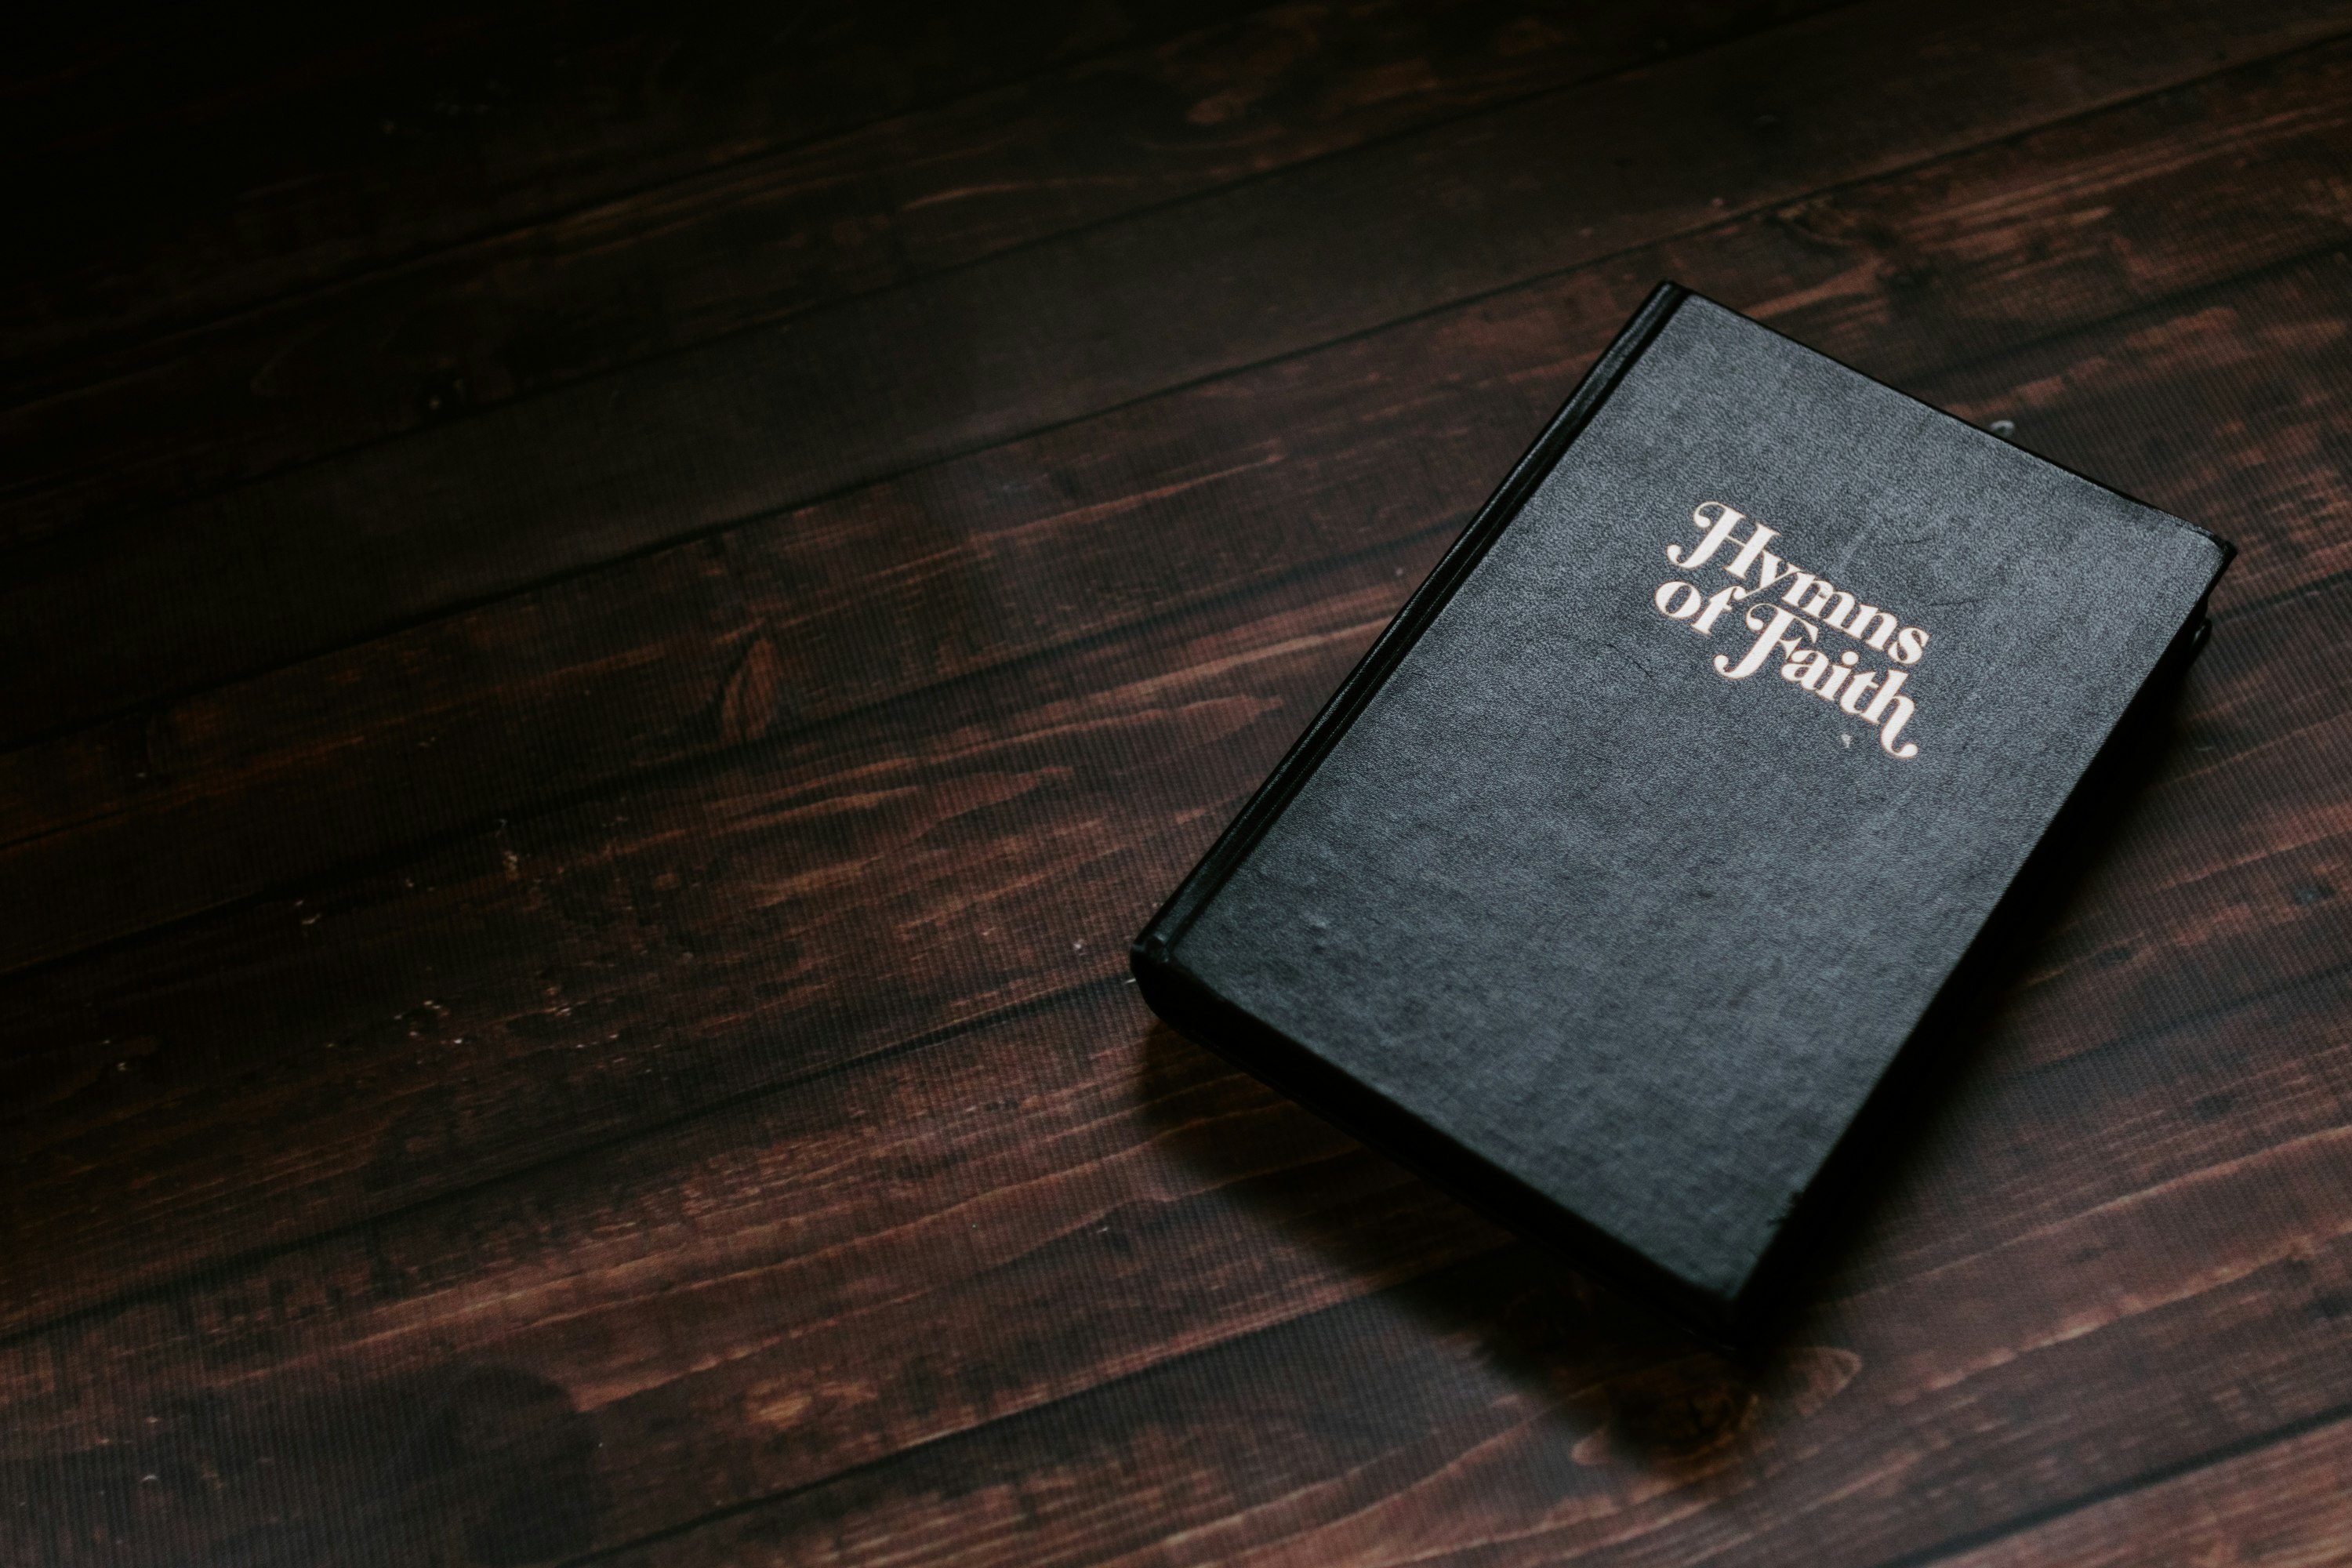 Hyms Of Faith book